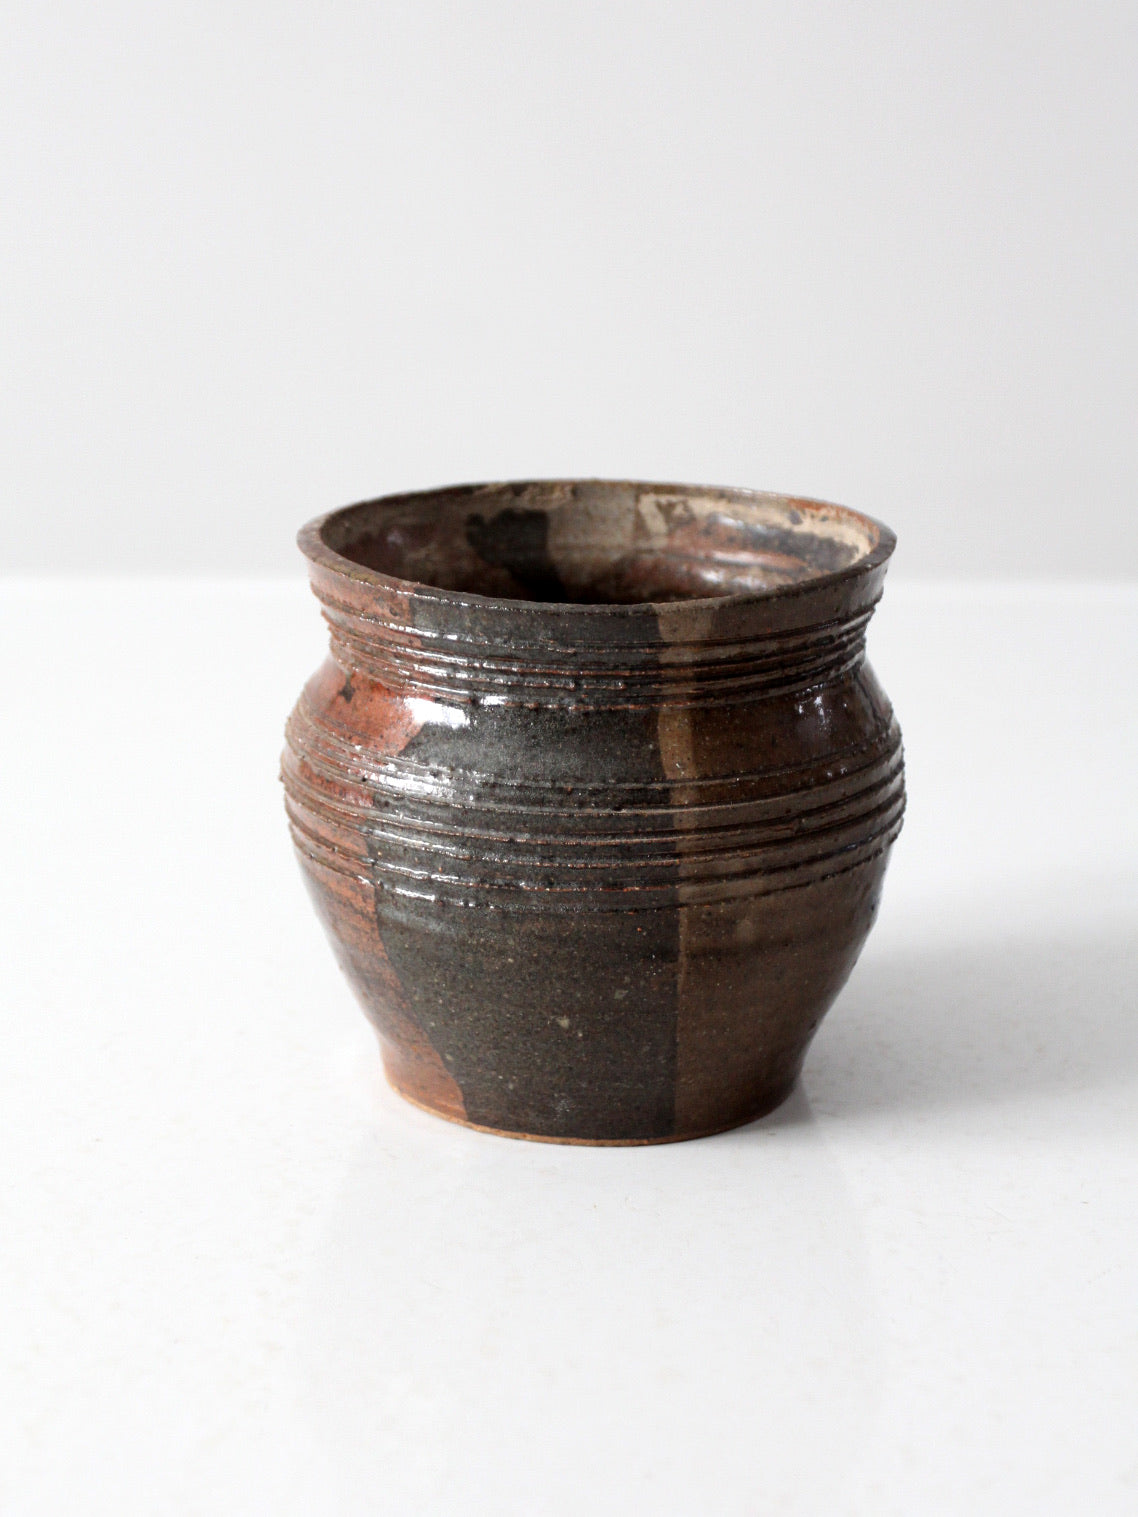 vintage studio pottery cachepot pottery vase